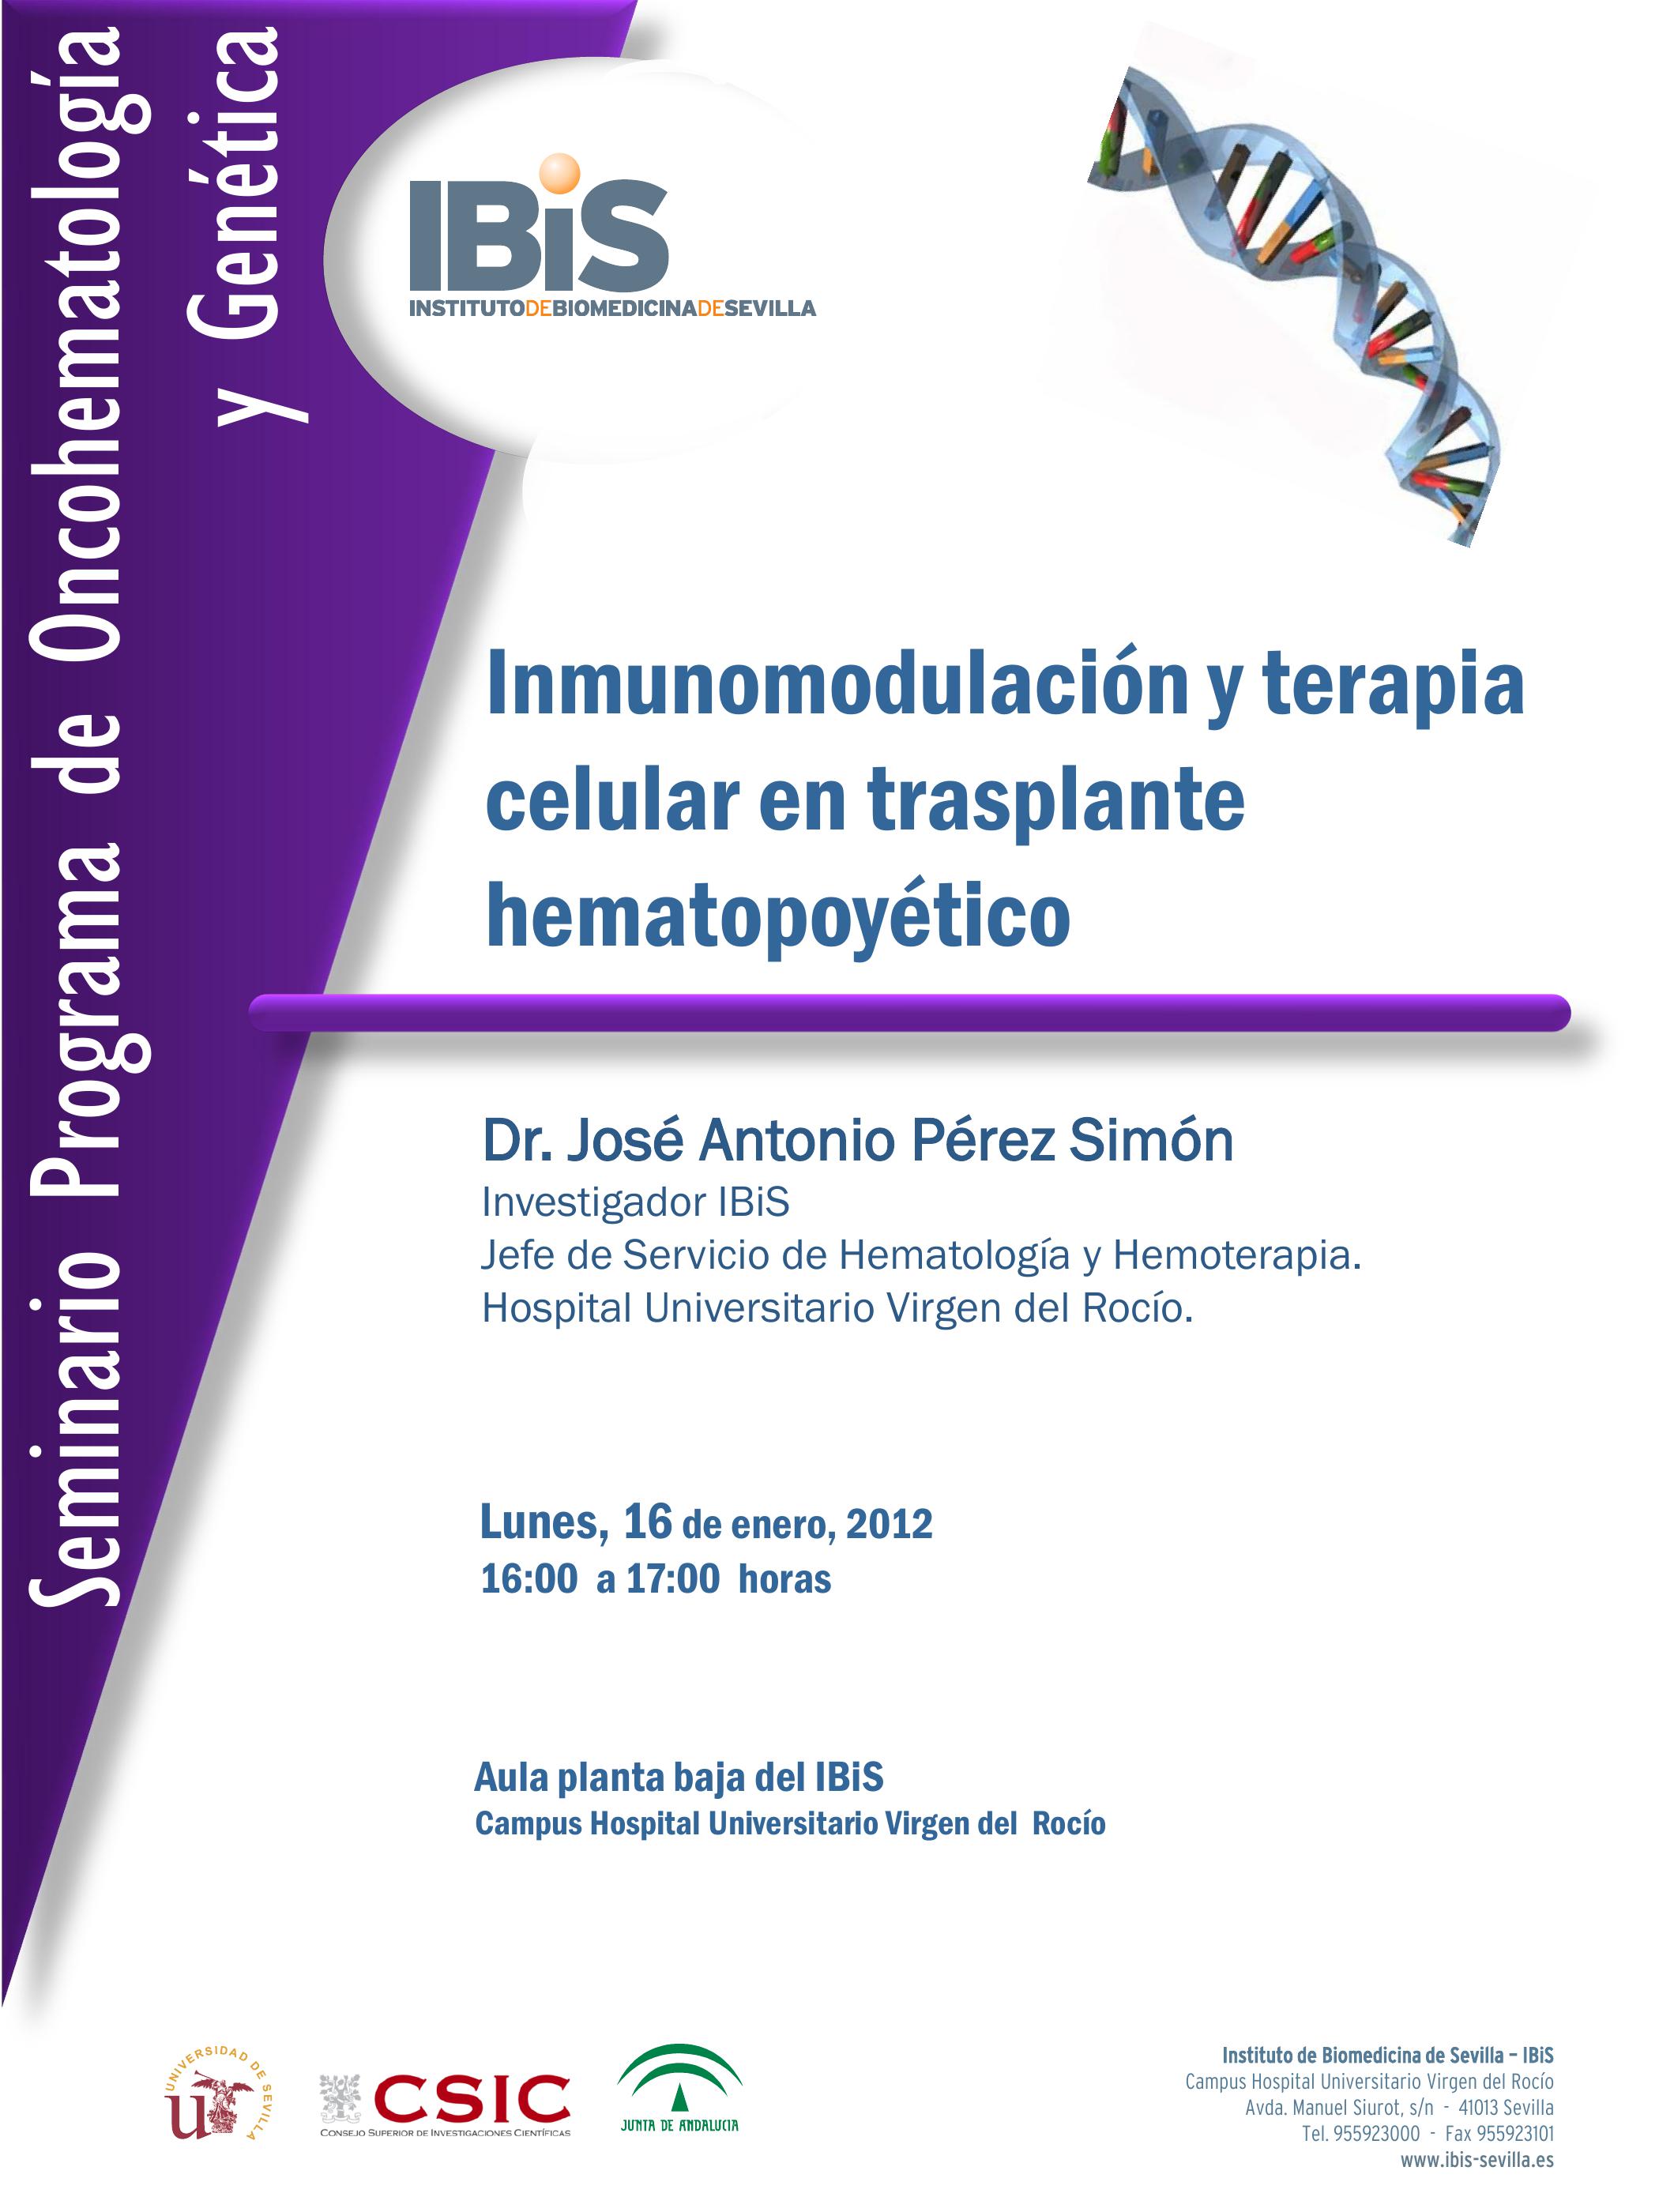 Poster: Inmunomodulación y terapia celular en trasplante hematopoyético.